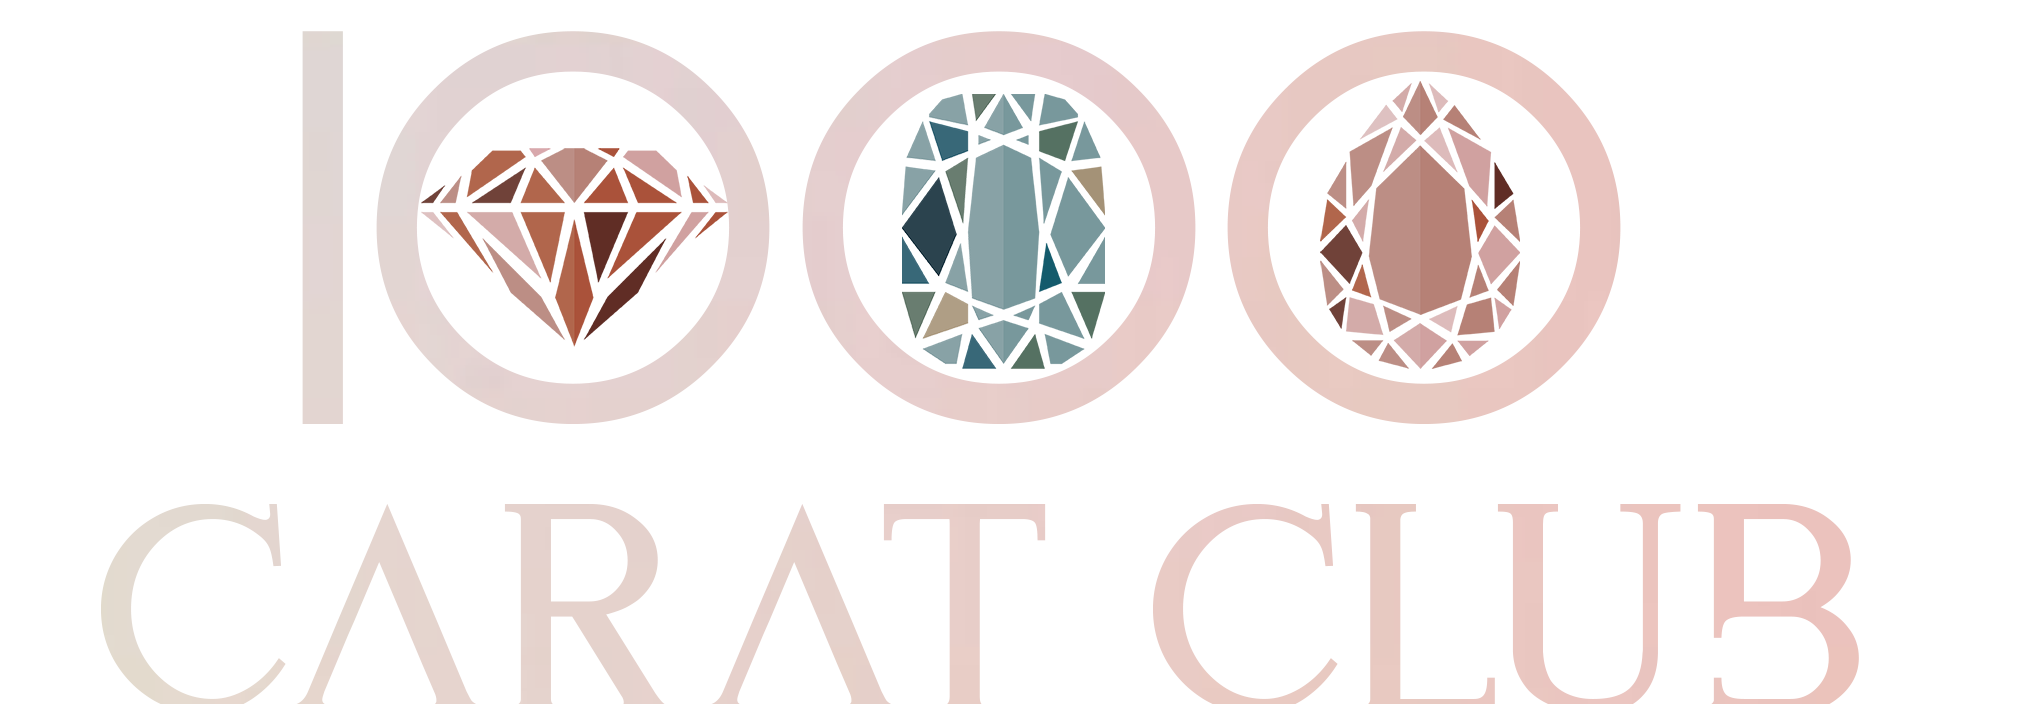 0502020704285-1000-carat-club-logo.png